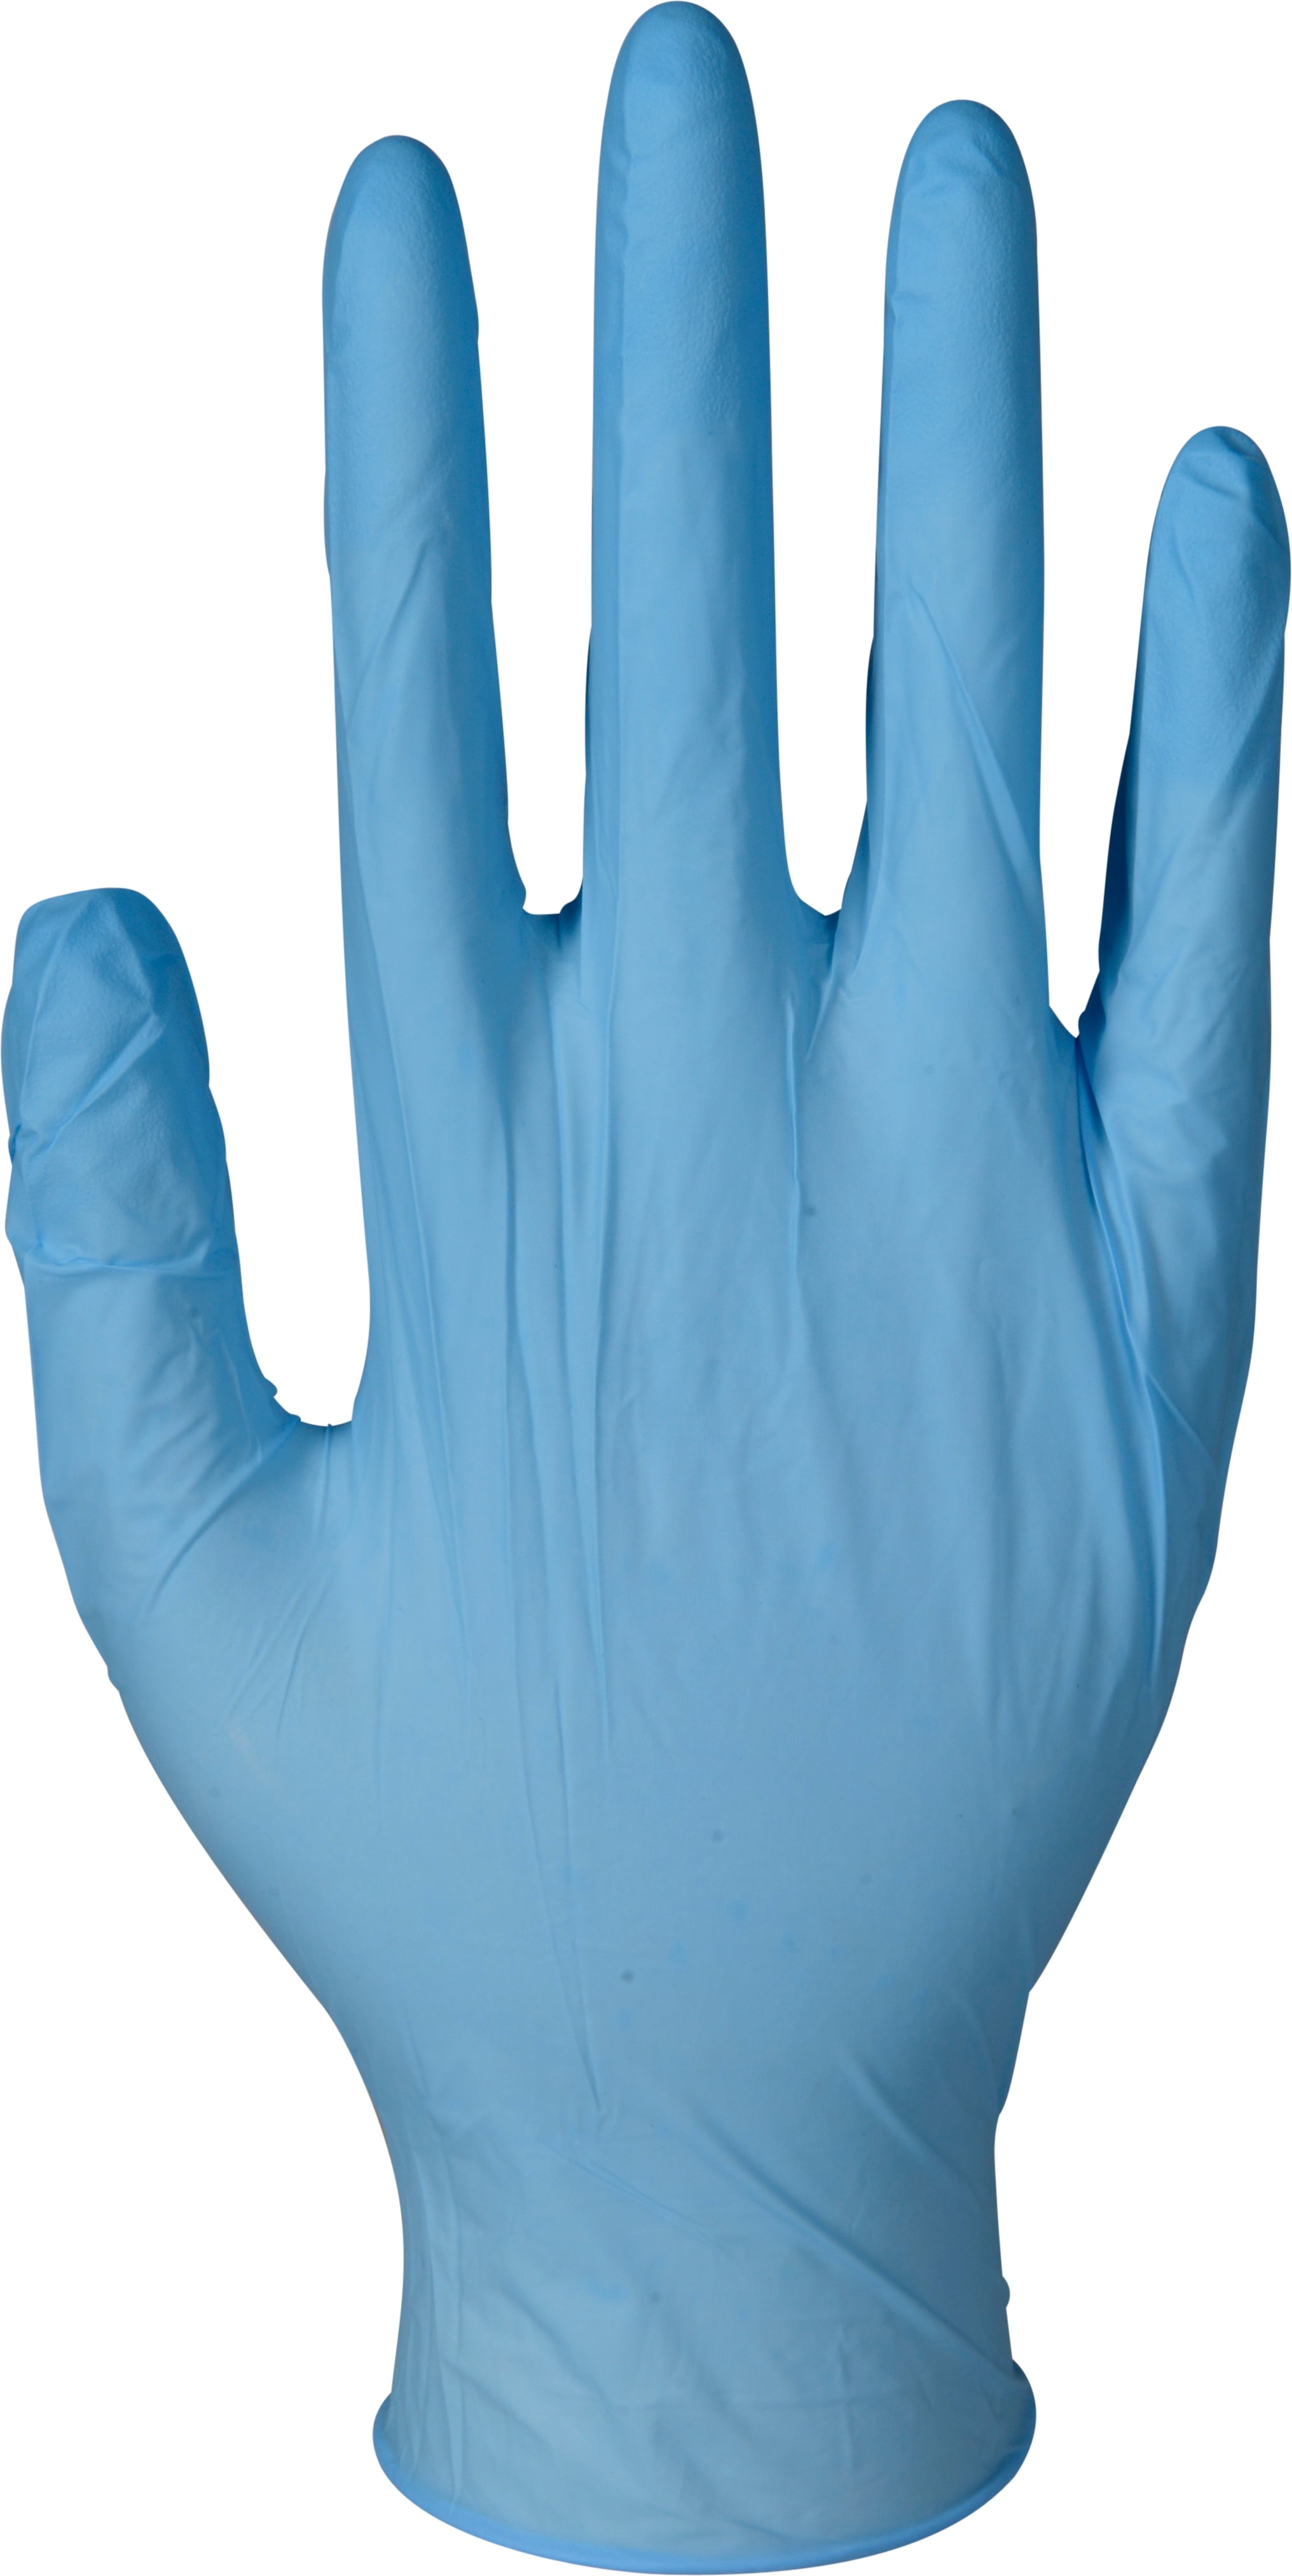 Handschoen blauw nitril maat S (uitloop,geen retourrecht)